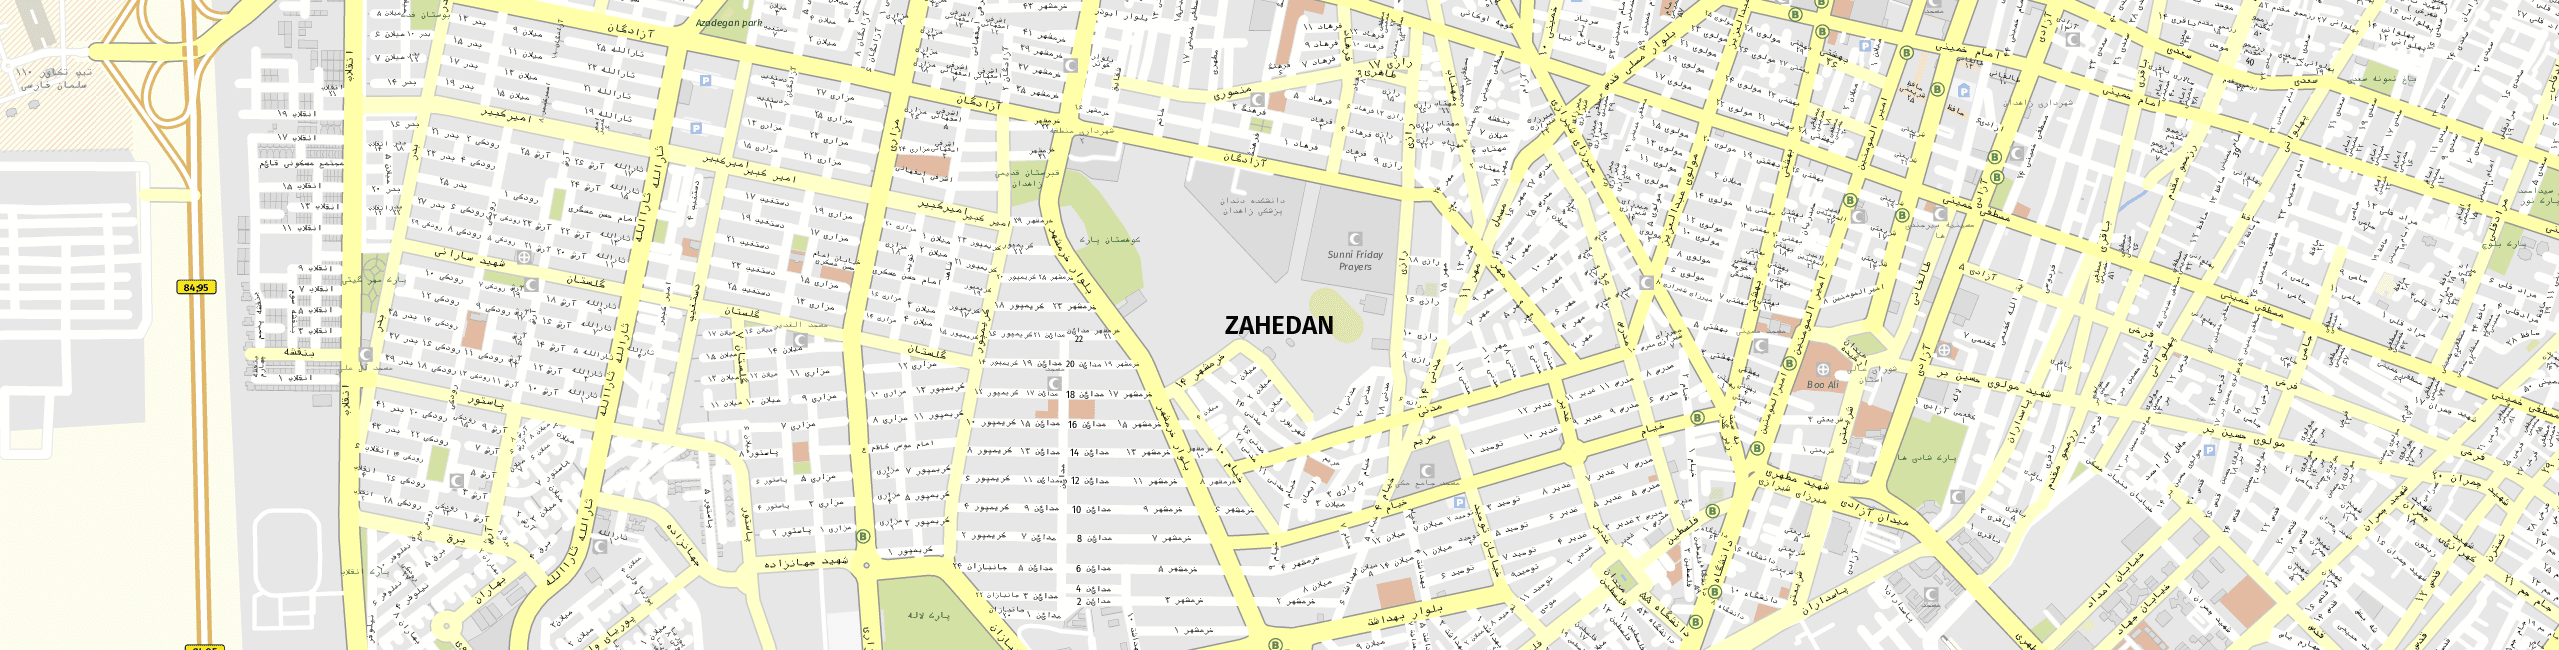 Stadtplan Zahedan zum Downloaden.